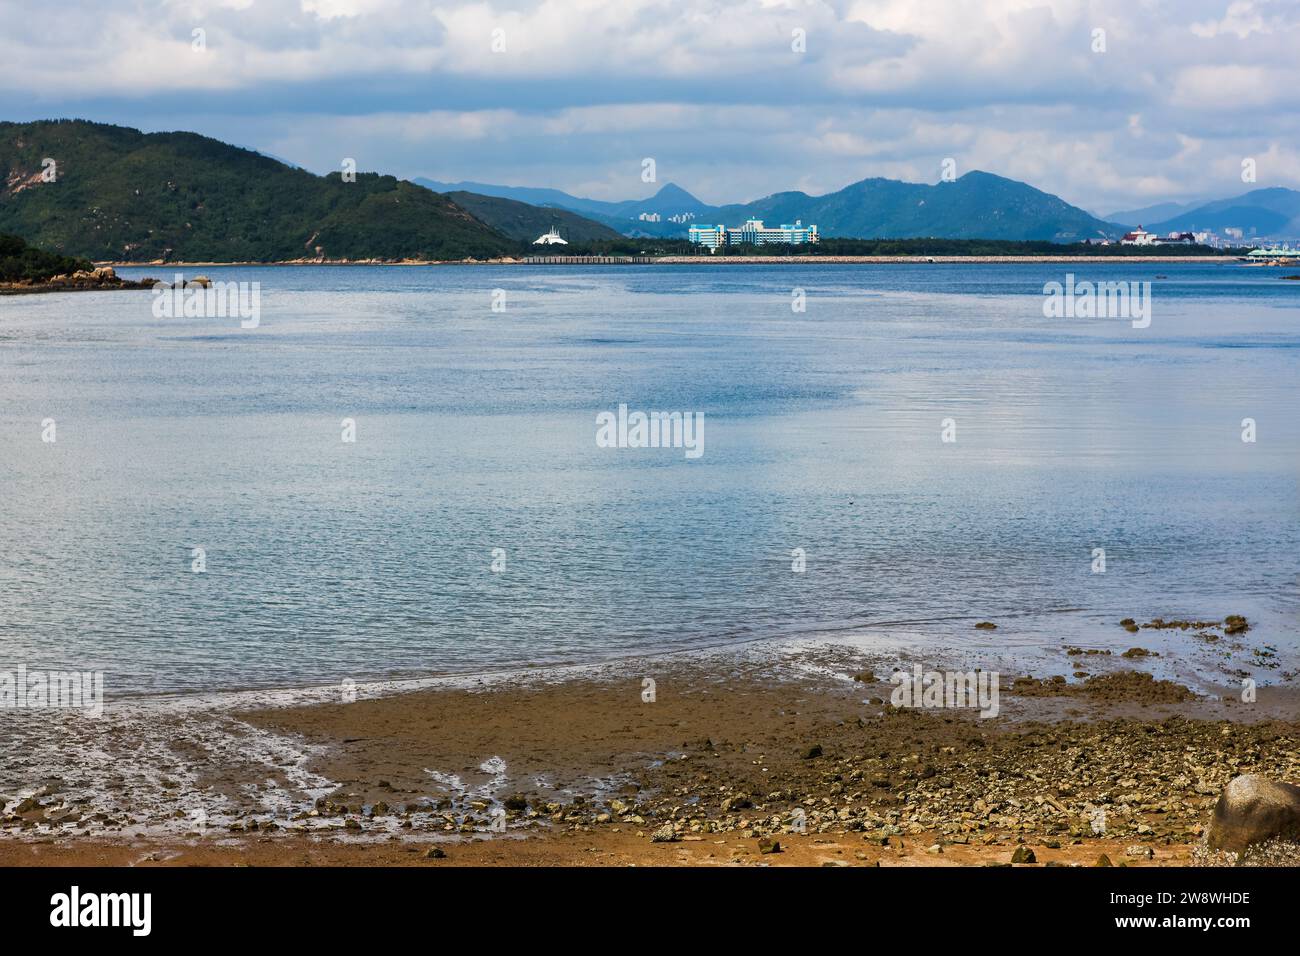 Discovery Bay auf Lantau Island, Hongkong. Riesige Bucht mit Wasser, die sich bis zum Hong Kong Disneyland erstreckt Stockfoto